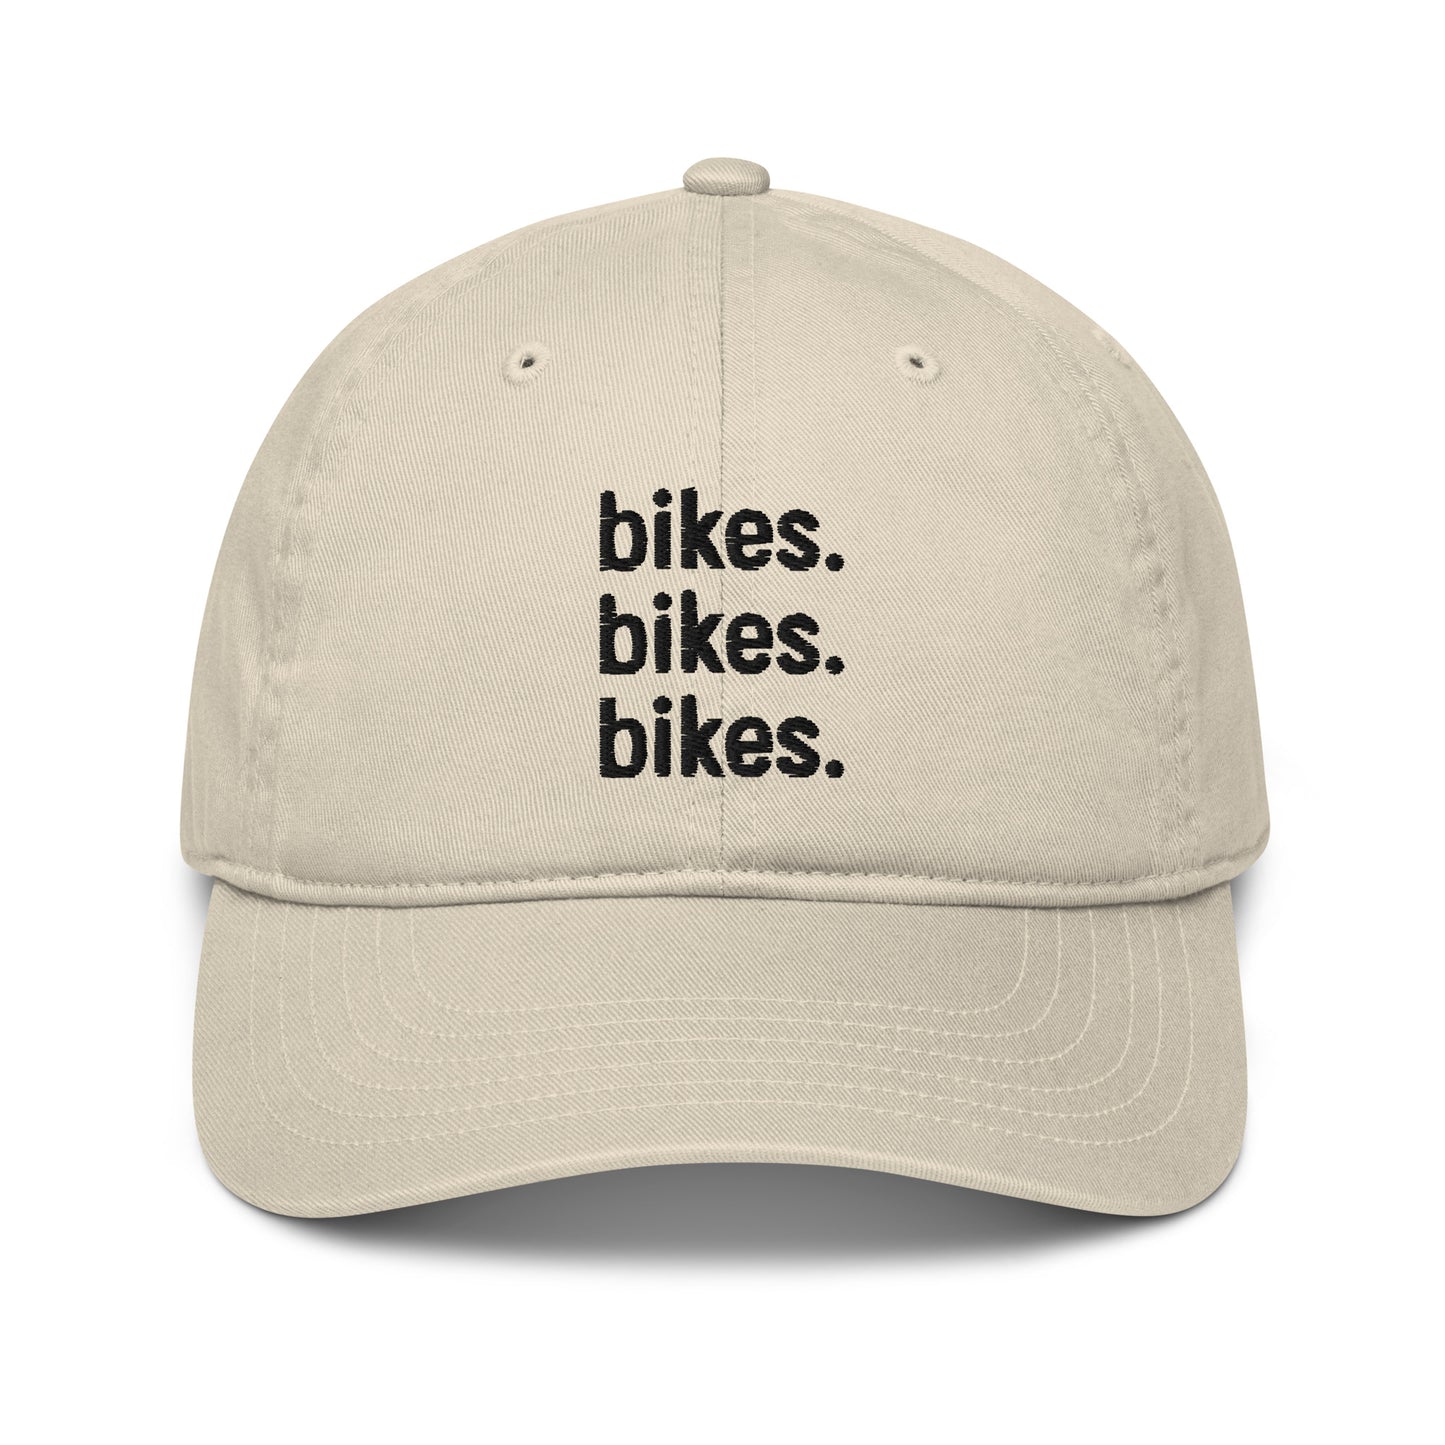 bikes.bikes.bikes. hat